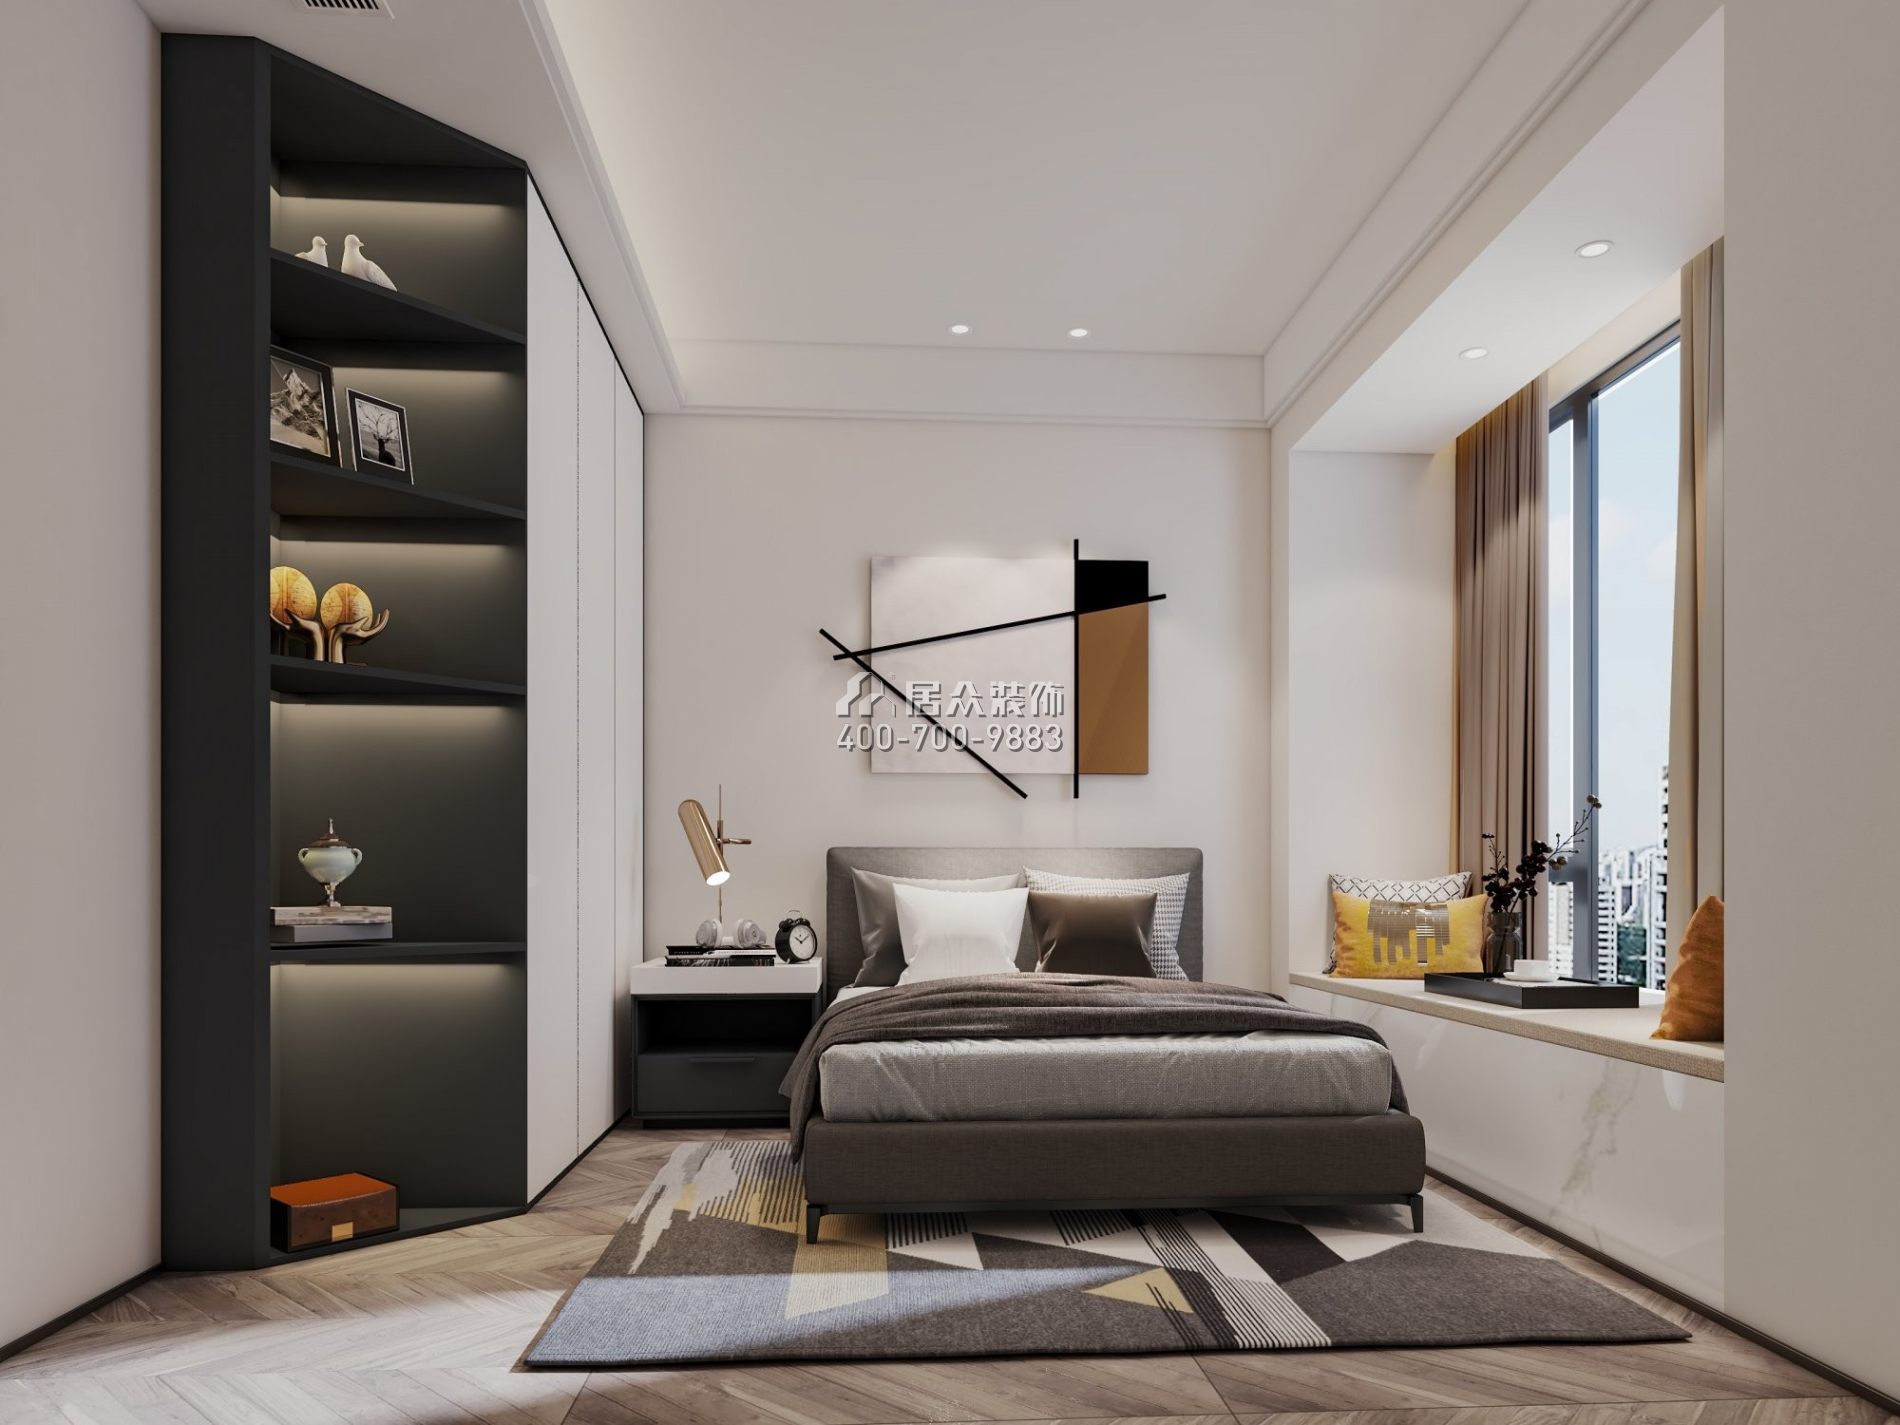 天鵝堡120平方米現代簡約風格平層戶型臥室裝修效果圖